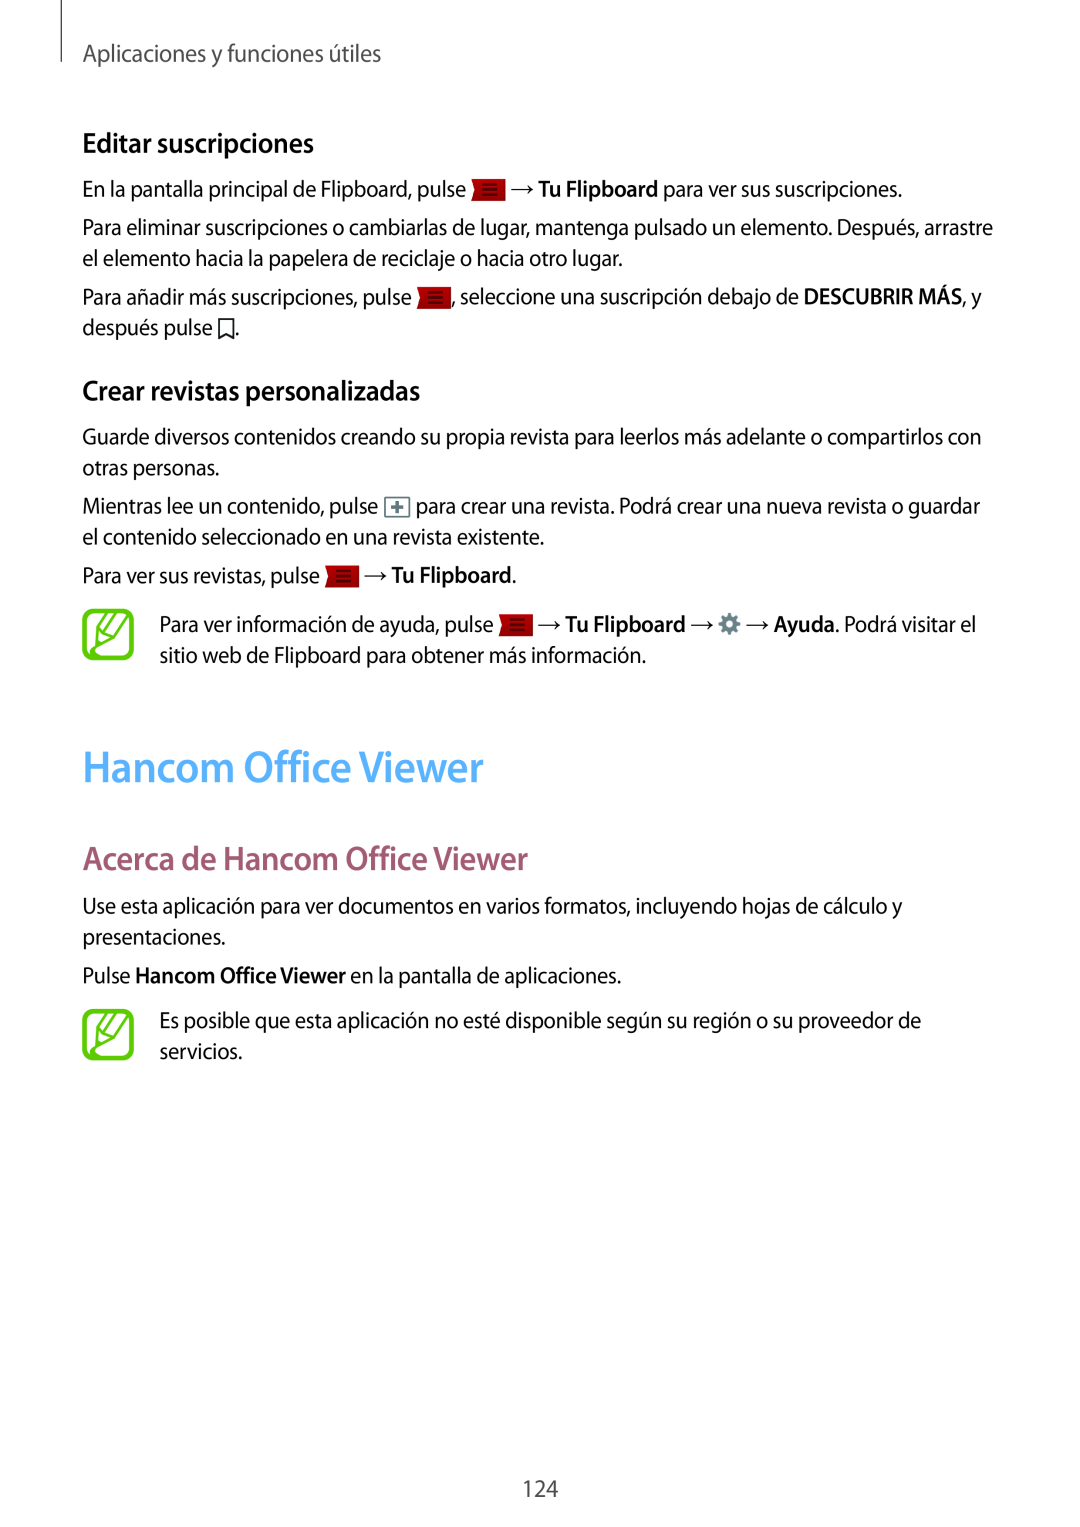 Samsung SM-T700NTSAPHE manual Acerca de Hancom Office Viewer, Editar suscripciones, Crear revistas personalizadas 